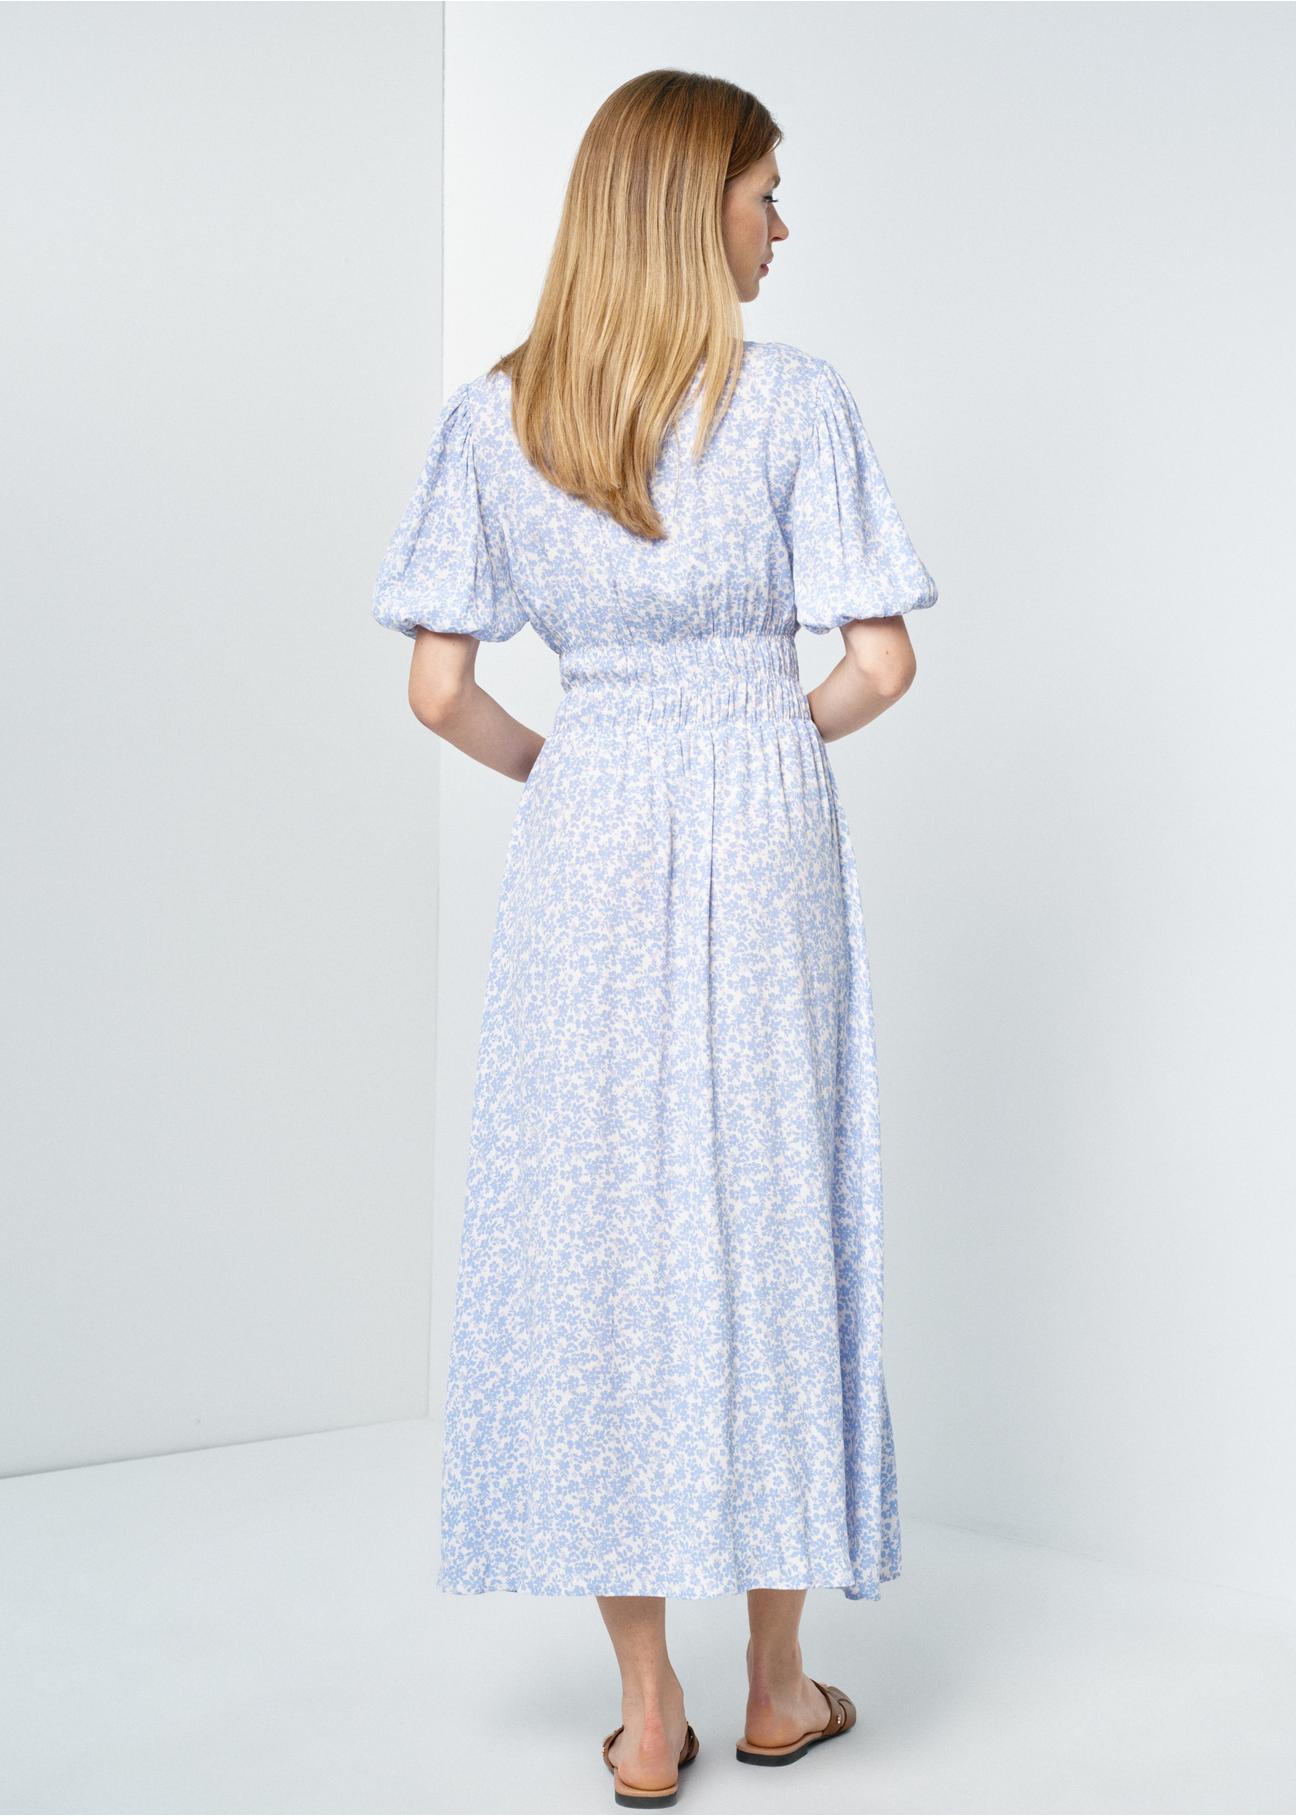 Długa błękitna sukienka letnia w kwiaty SUKDT-0191-12(W24)